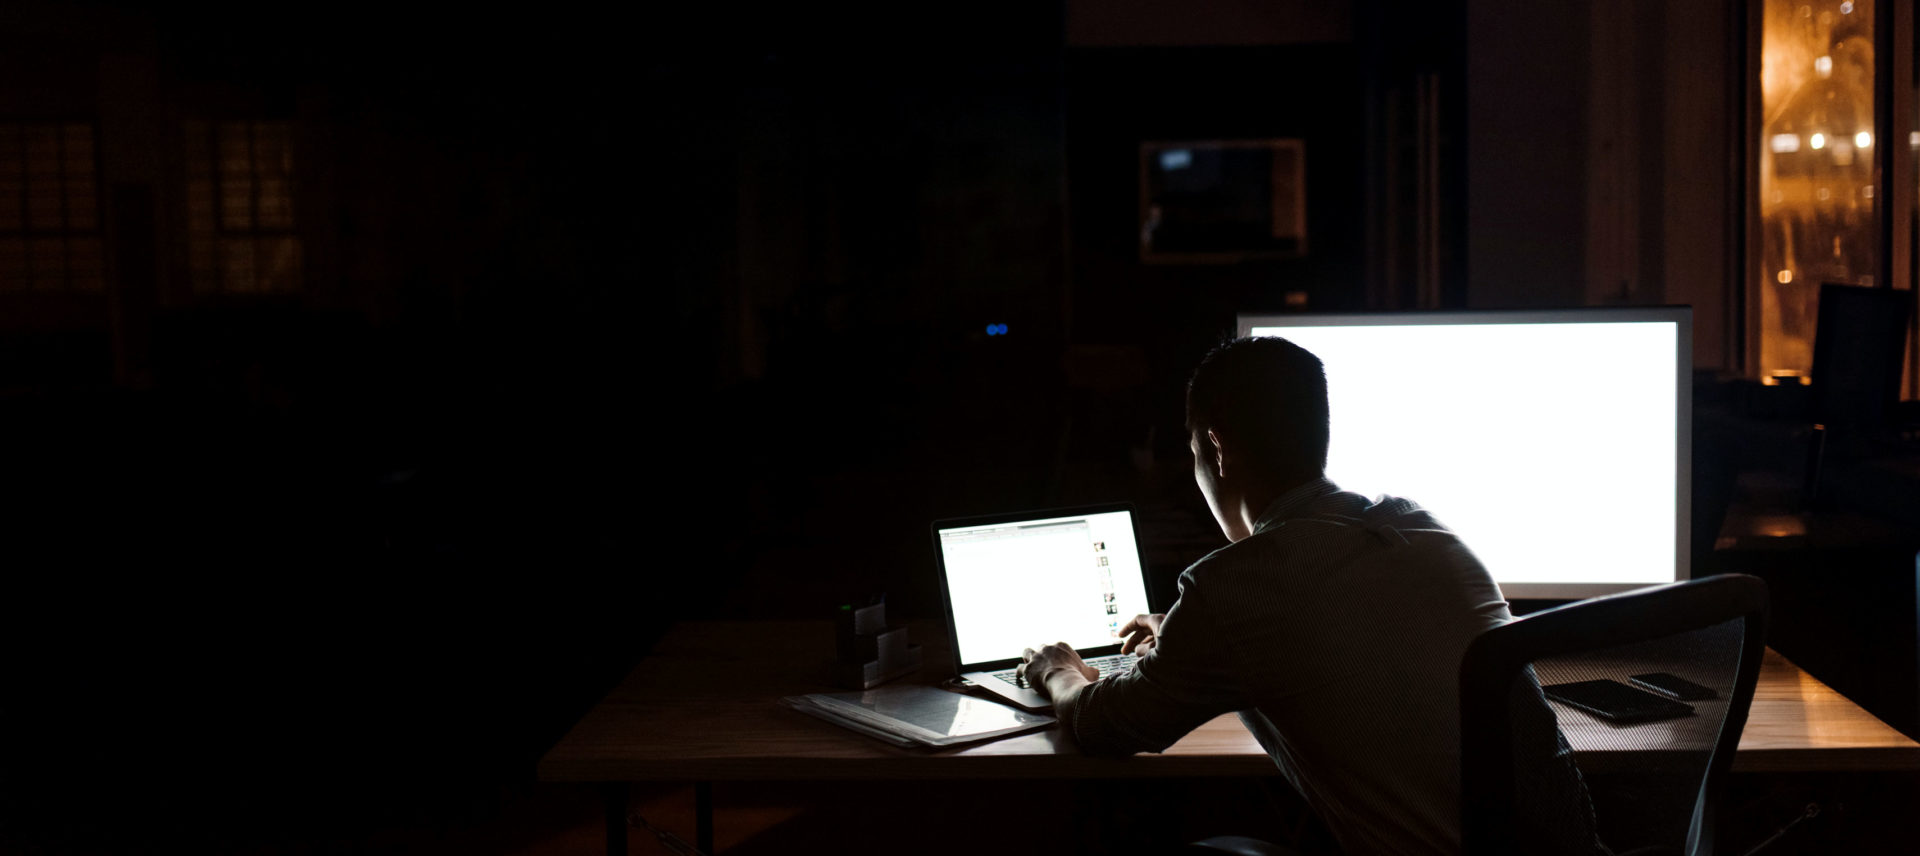 designer working alone in the dark